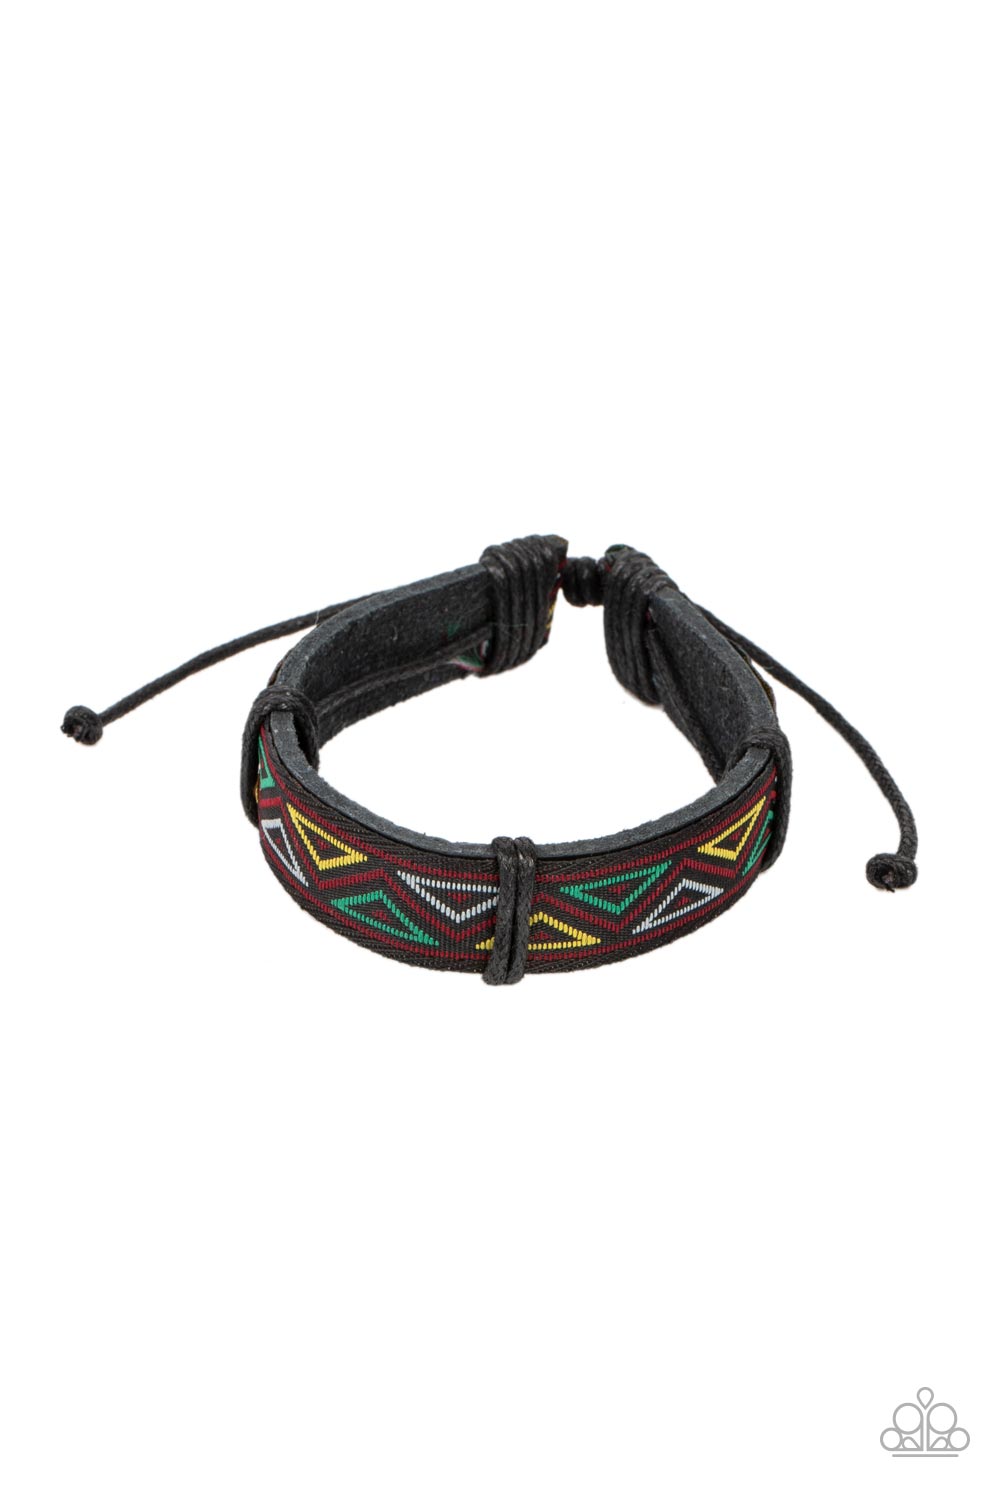 Tundra Thunder - Multi Colorful Textile Pattern, Black Ribbon, & Black Leather Paparazzi Urban Bracelet